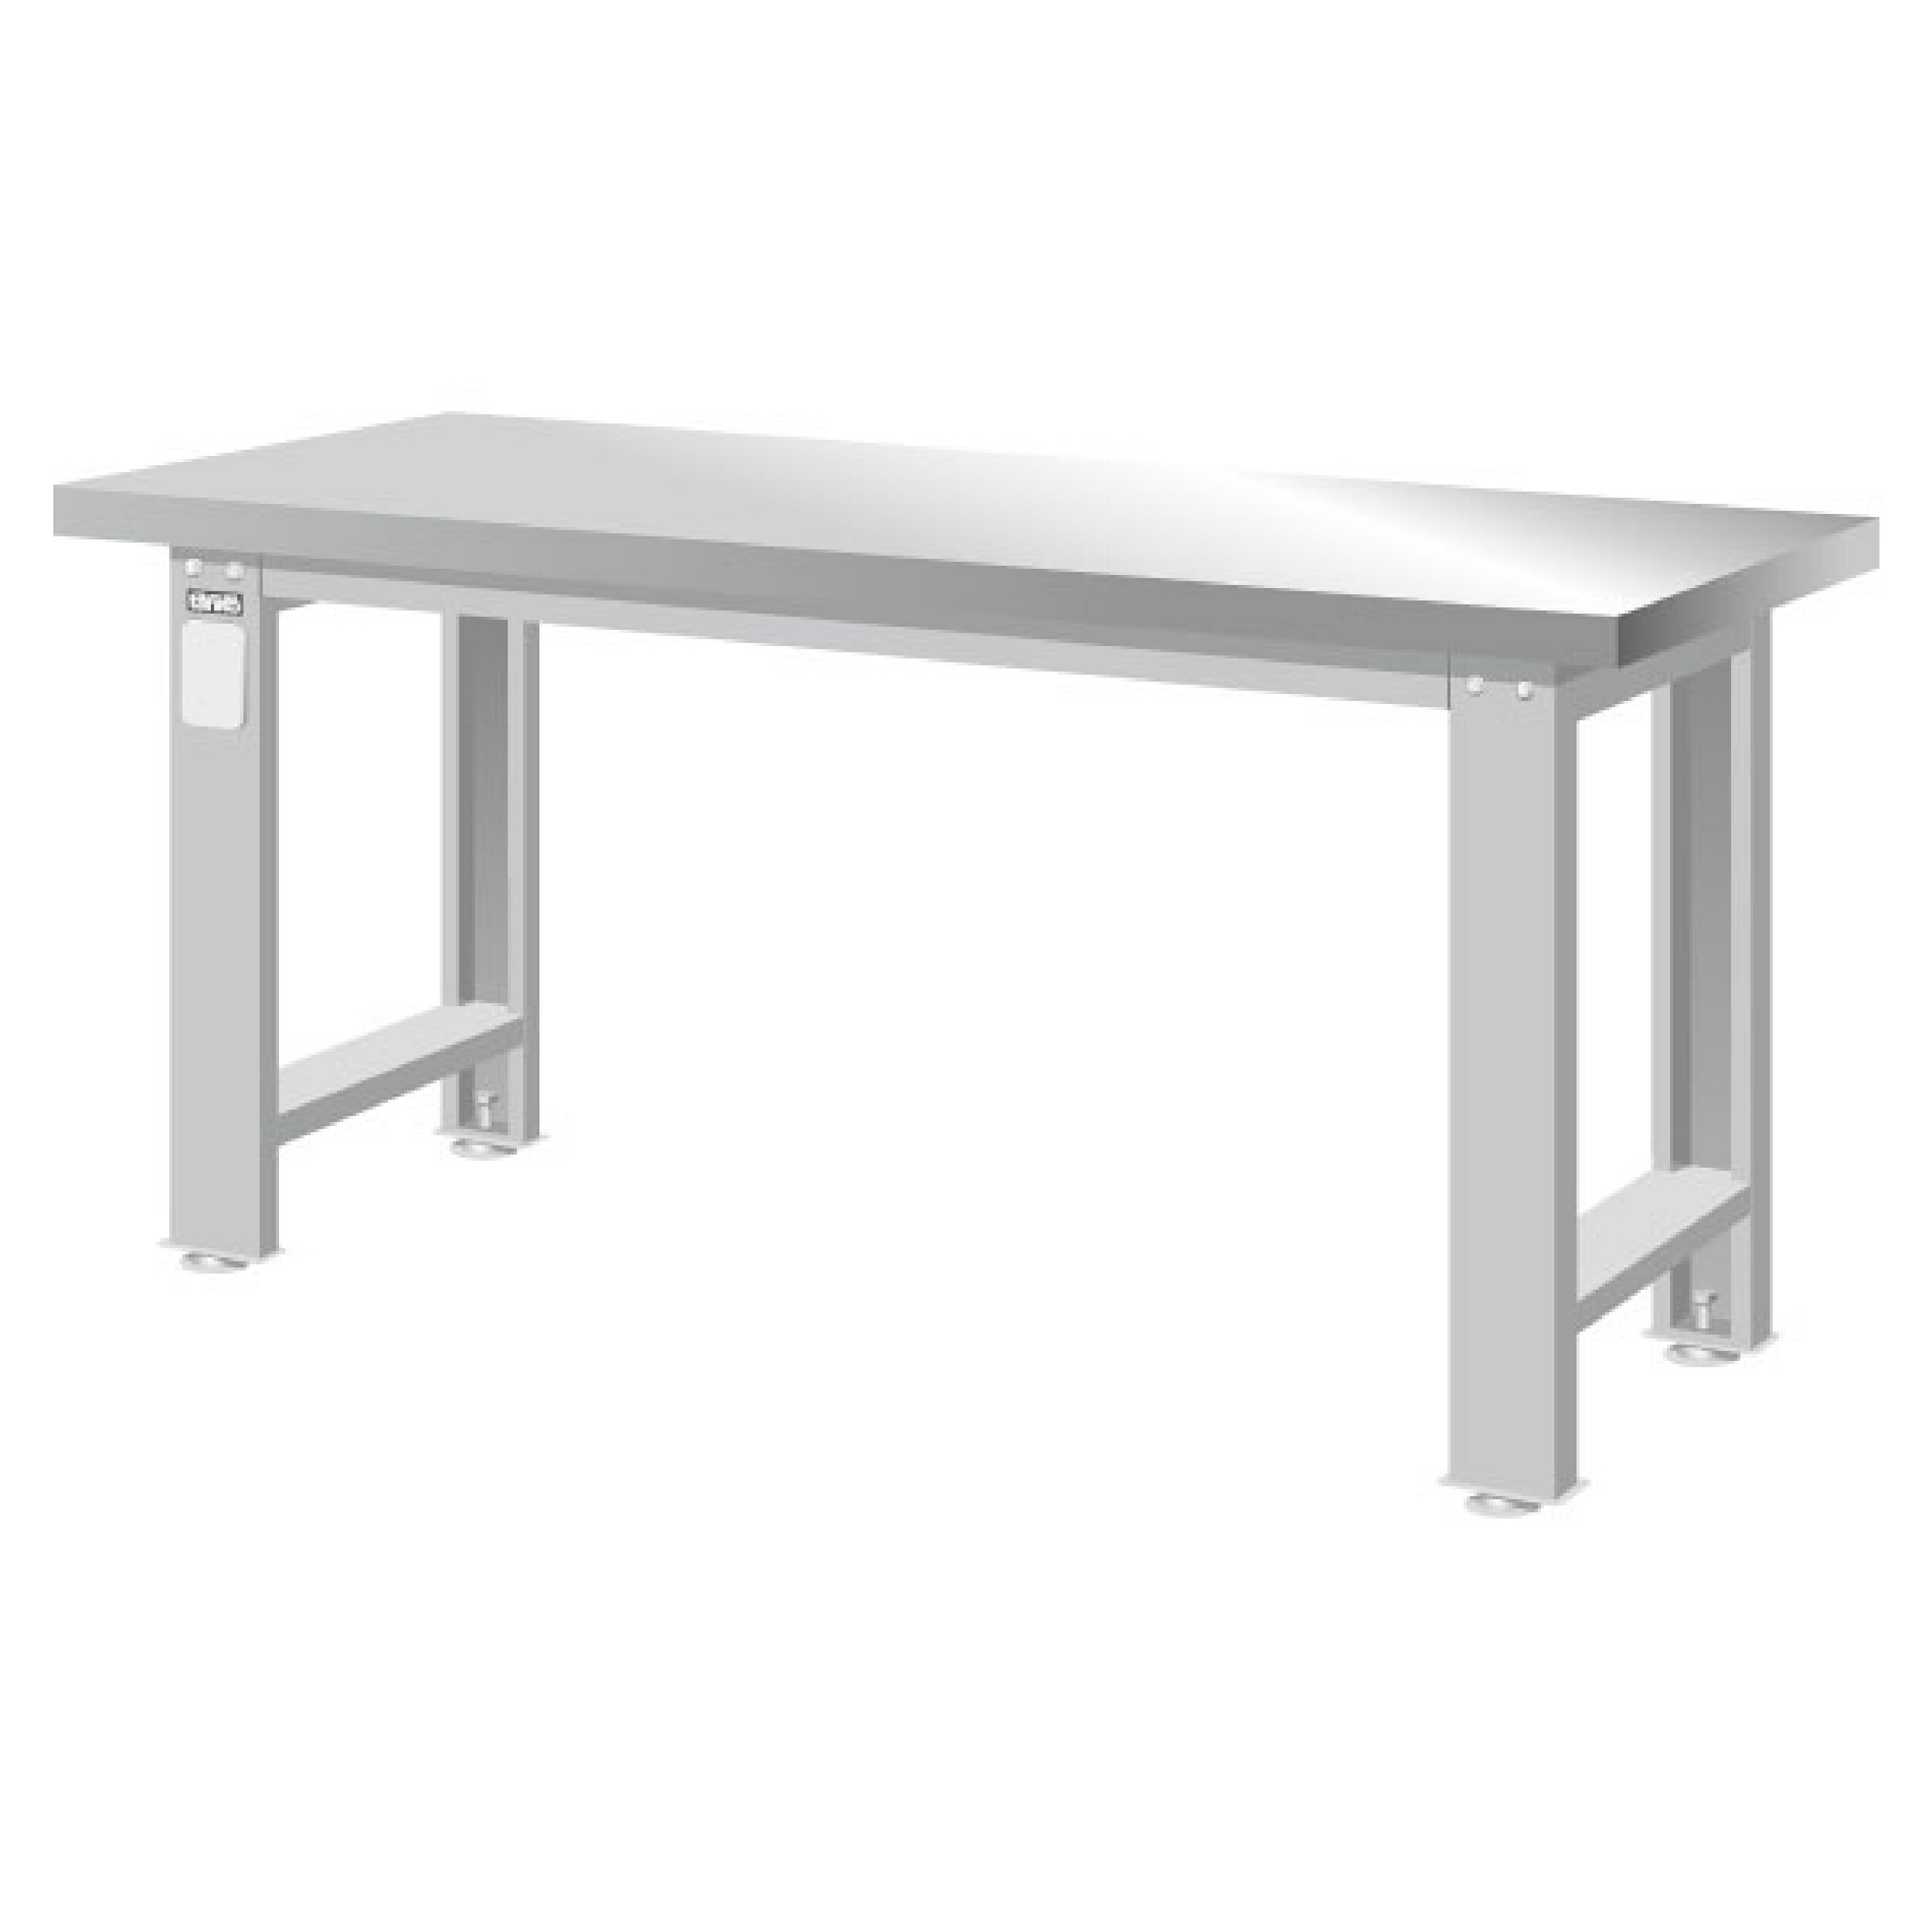 TANKO 重量型工作桌 不銹鋼桌板 WA-57S (一般型)